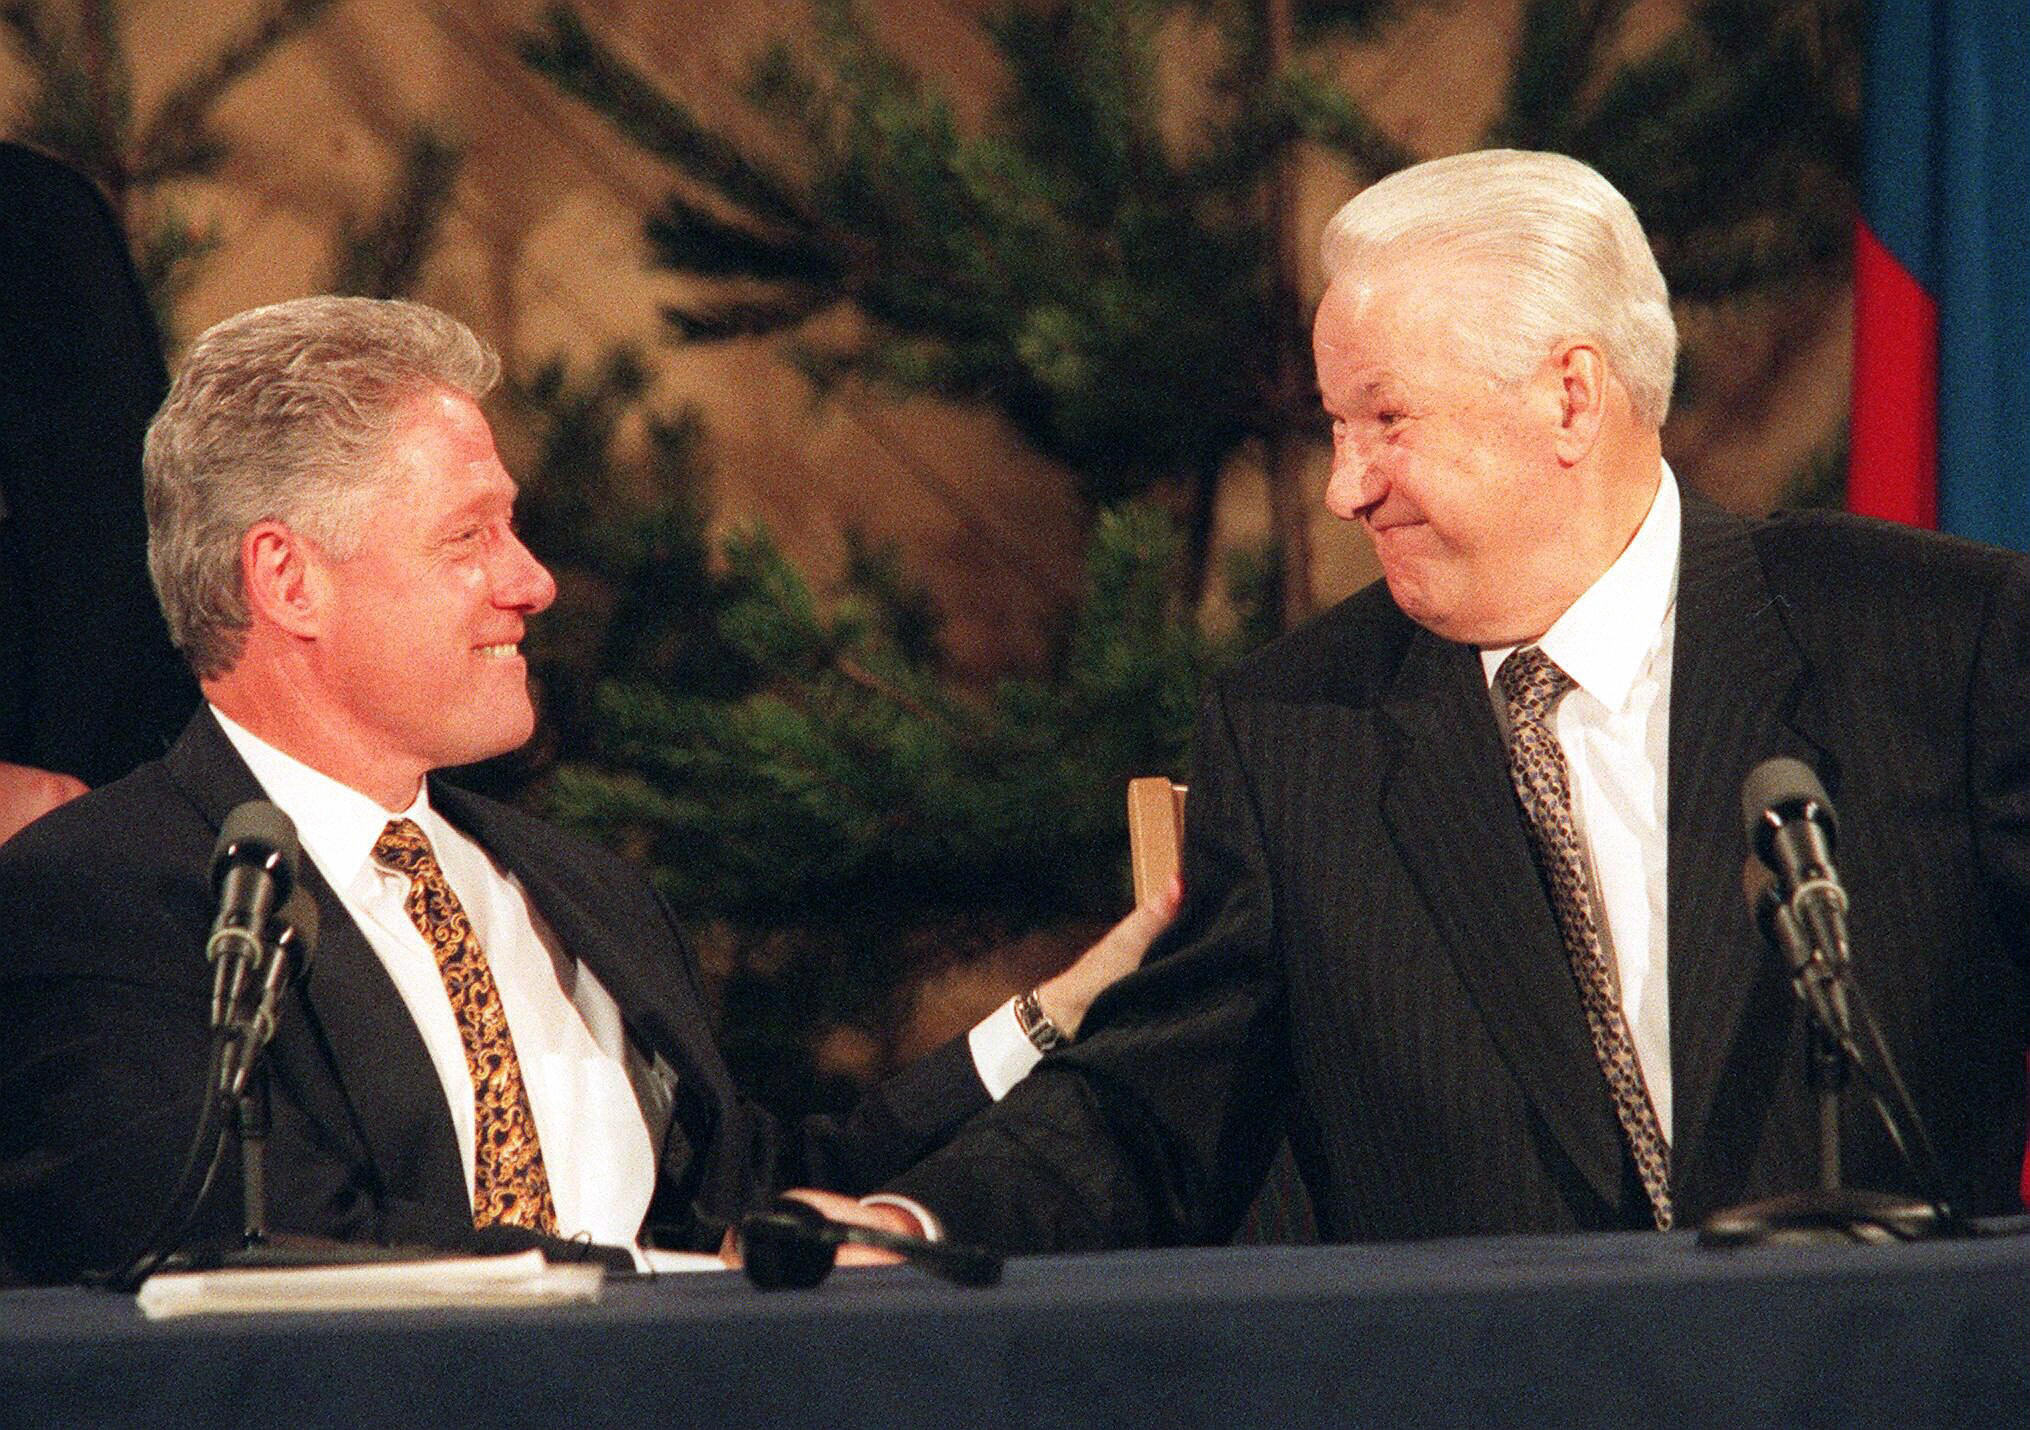 21 марта 1997 года... Хельсинки, ФИНЛЯНДИЯ. Билл Клинтон и Борис Ельцин после совместной пресс-конференции по итогам саммита в Хельсинки. 